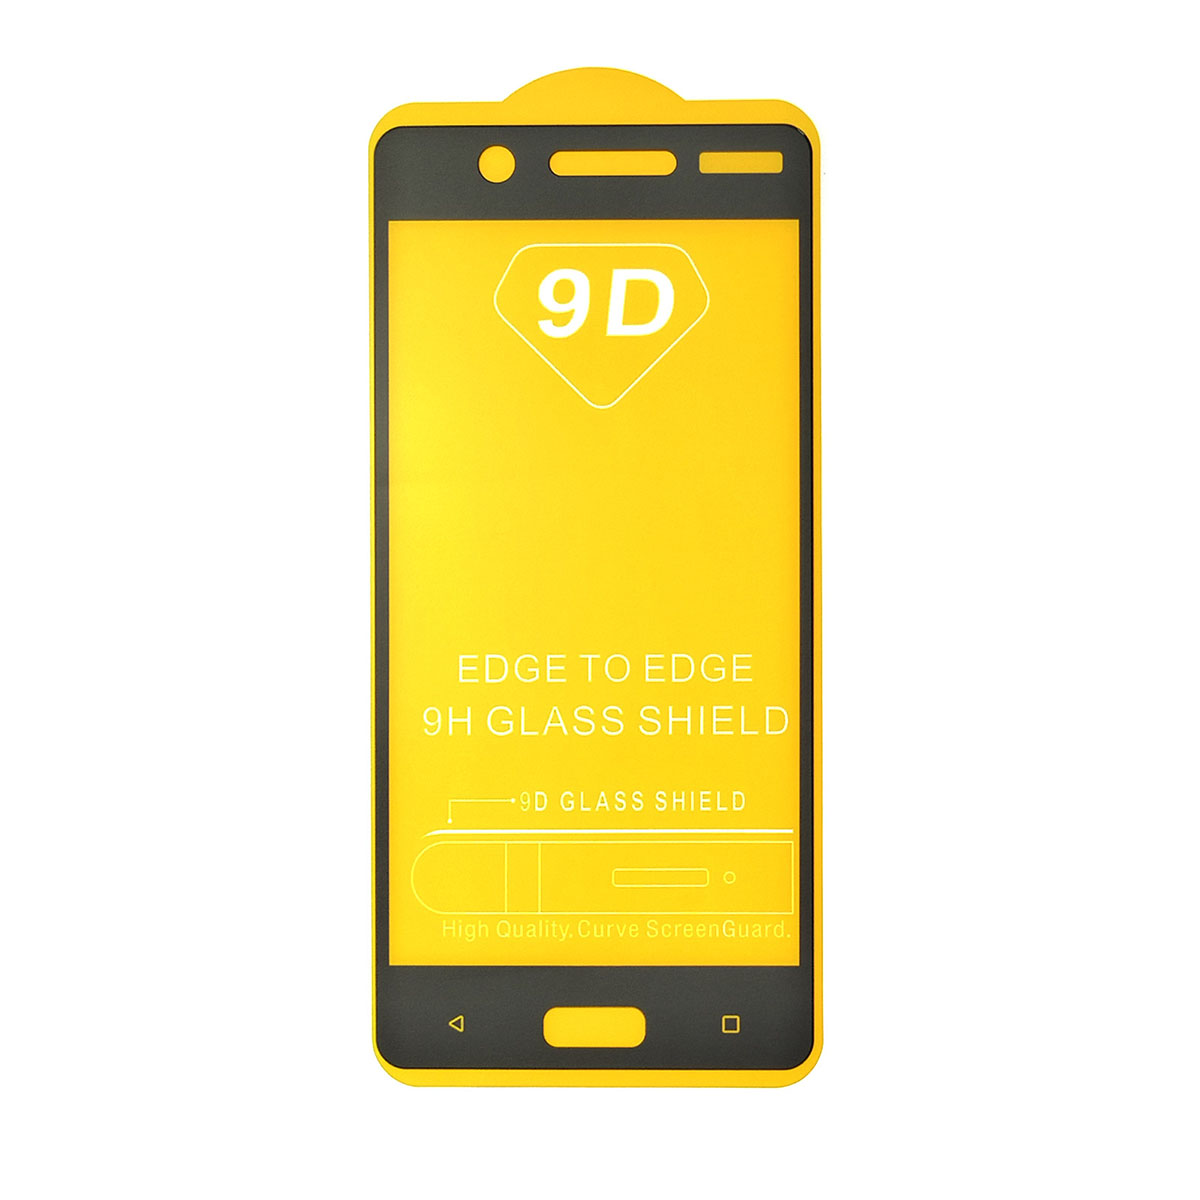 Защитное стекло 9D для Nokia 5 (TA-1053), ударопрочное, цвет окантовки черный.